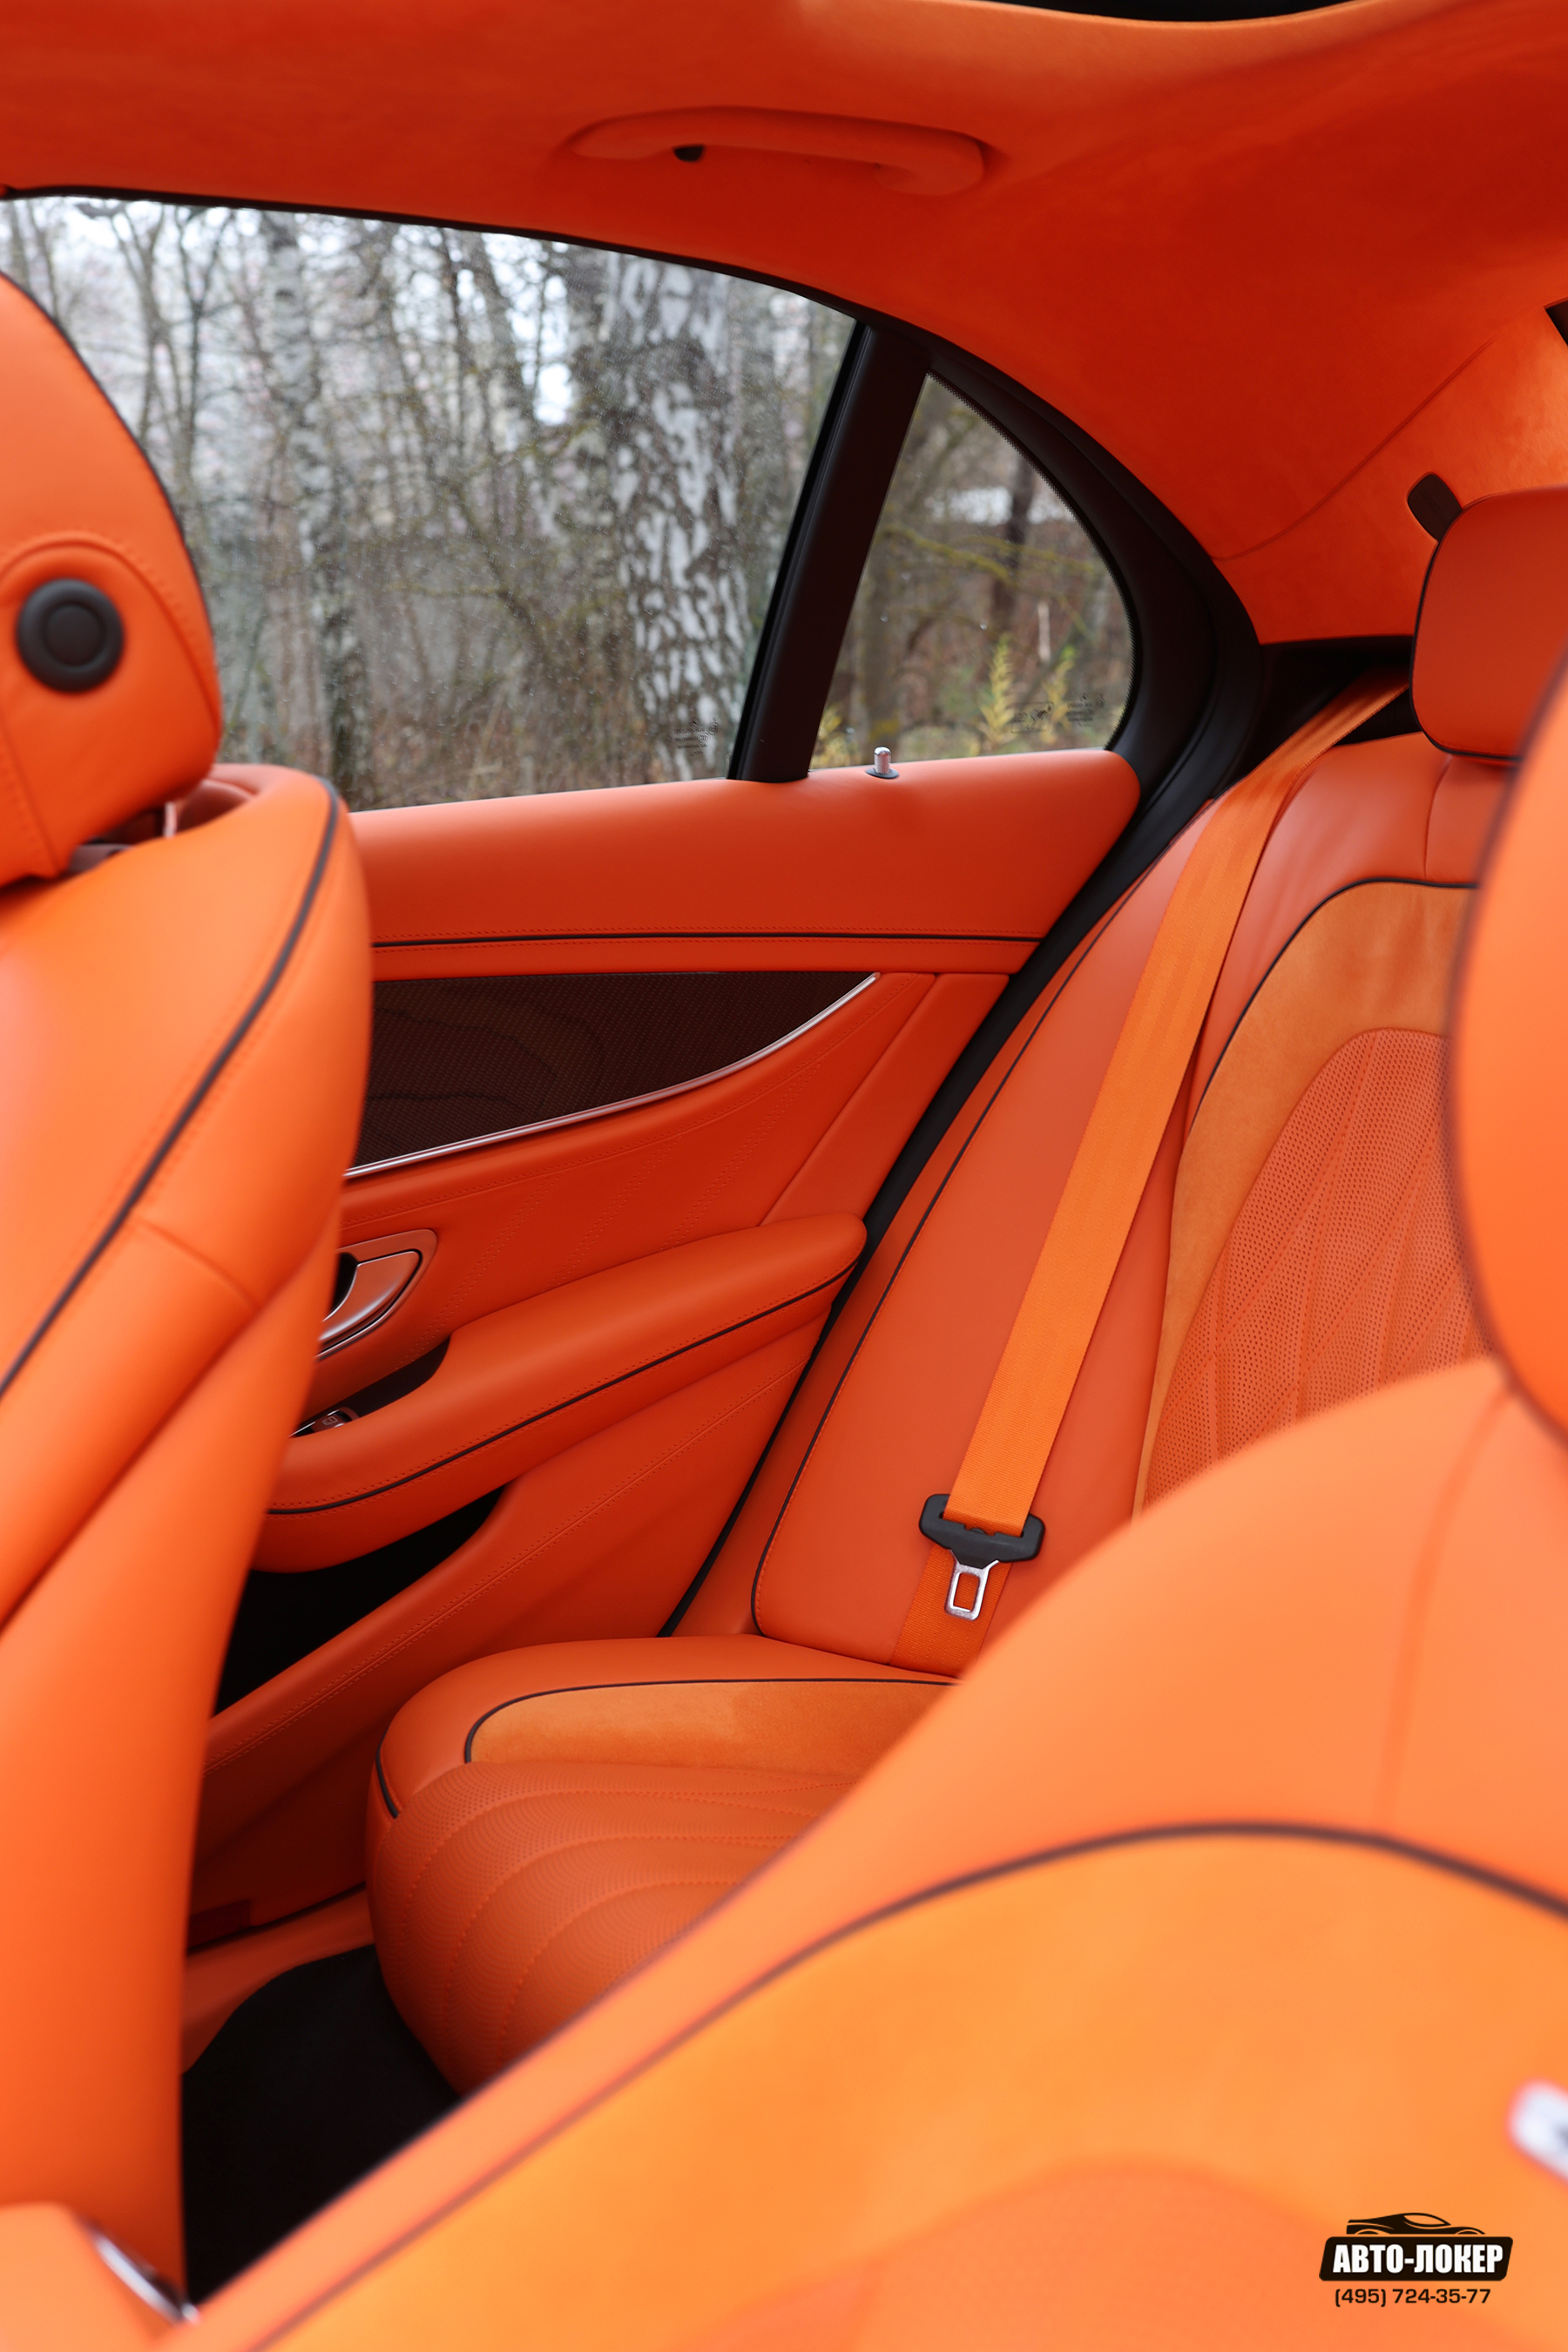 Перетяжка  задних сидений салона MB E63S (W213) оранжевой кожей и перешив ремней в цвет салона